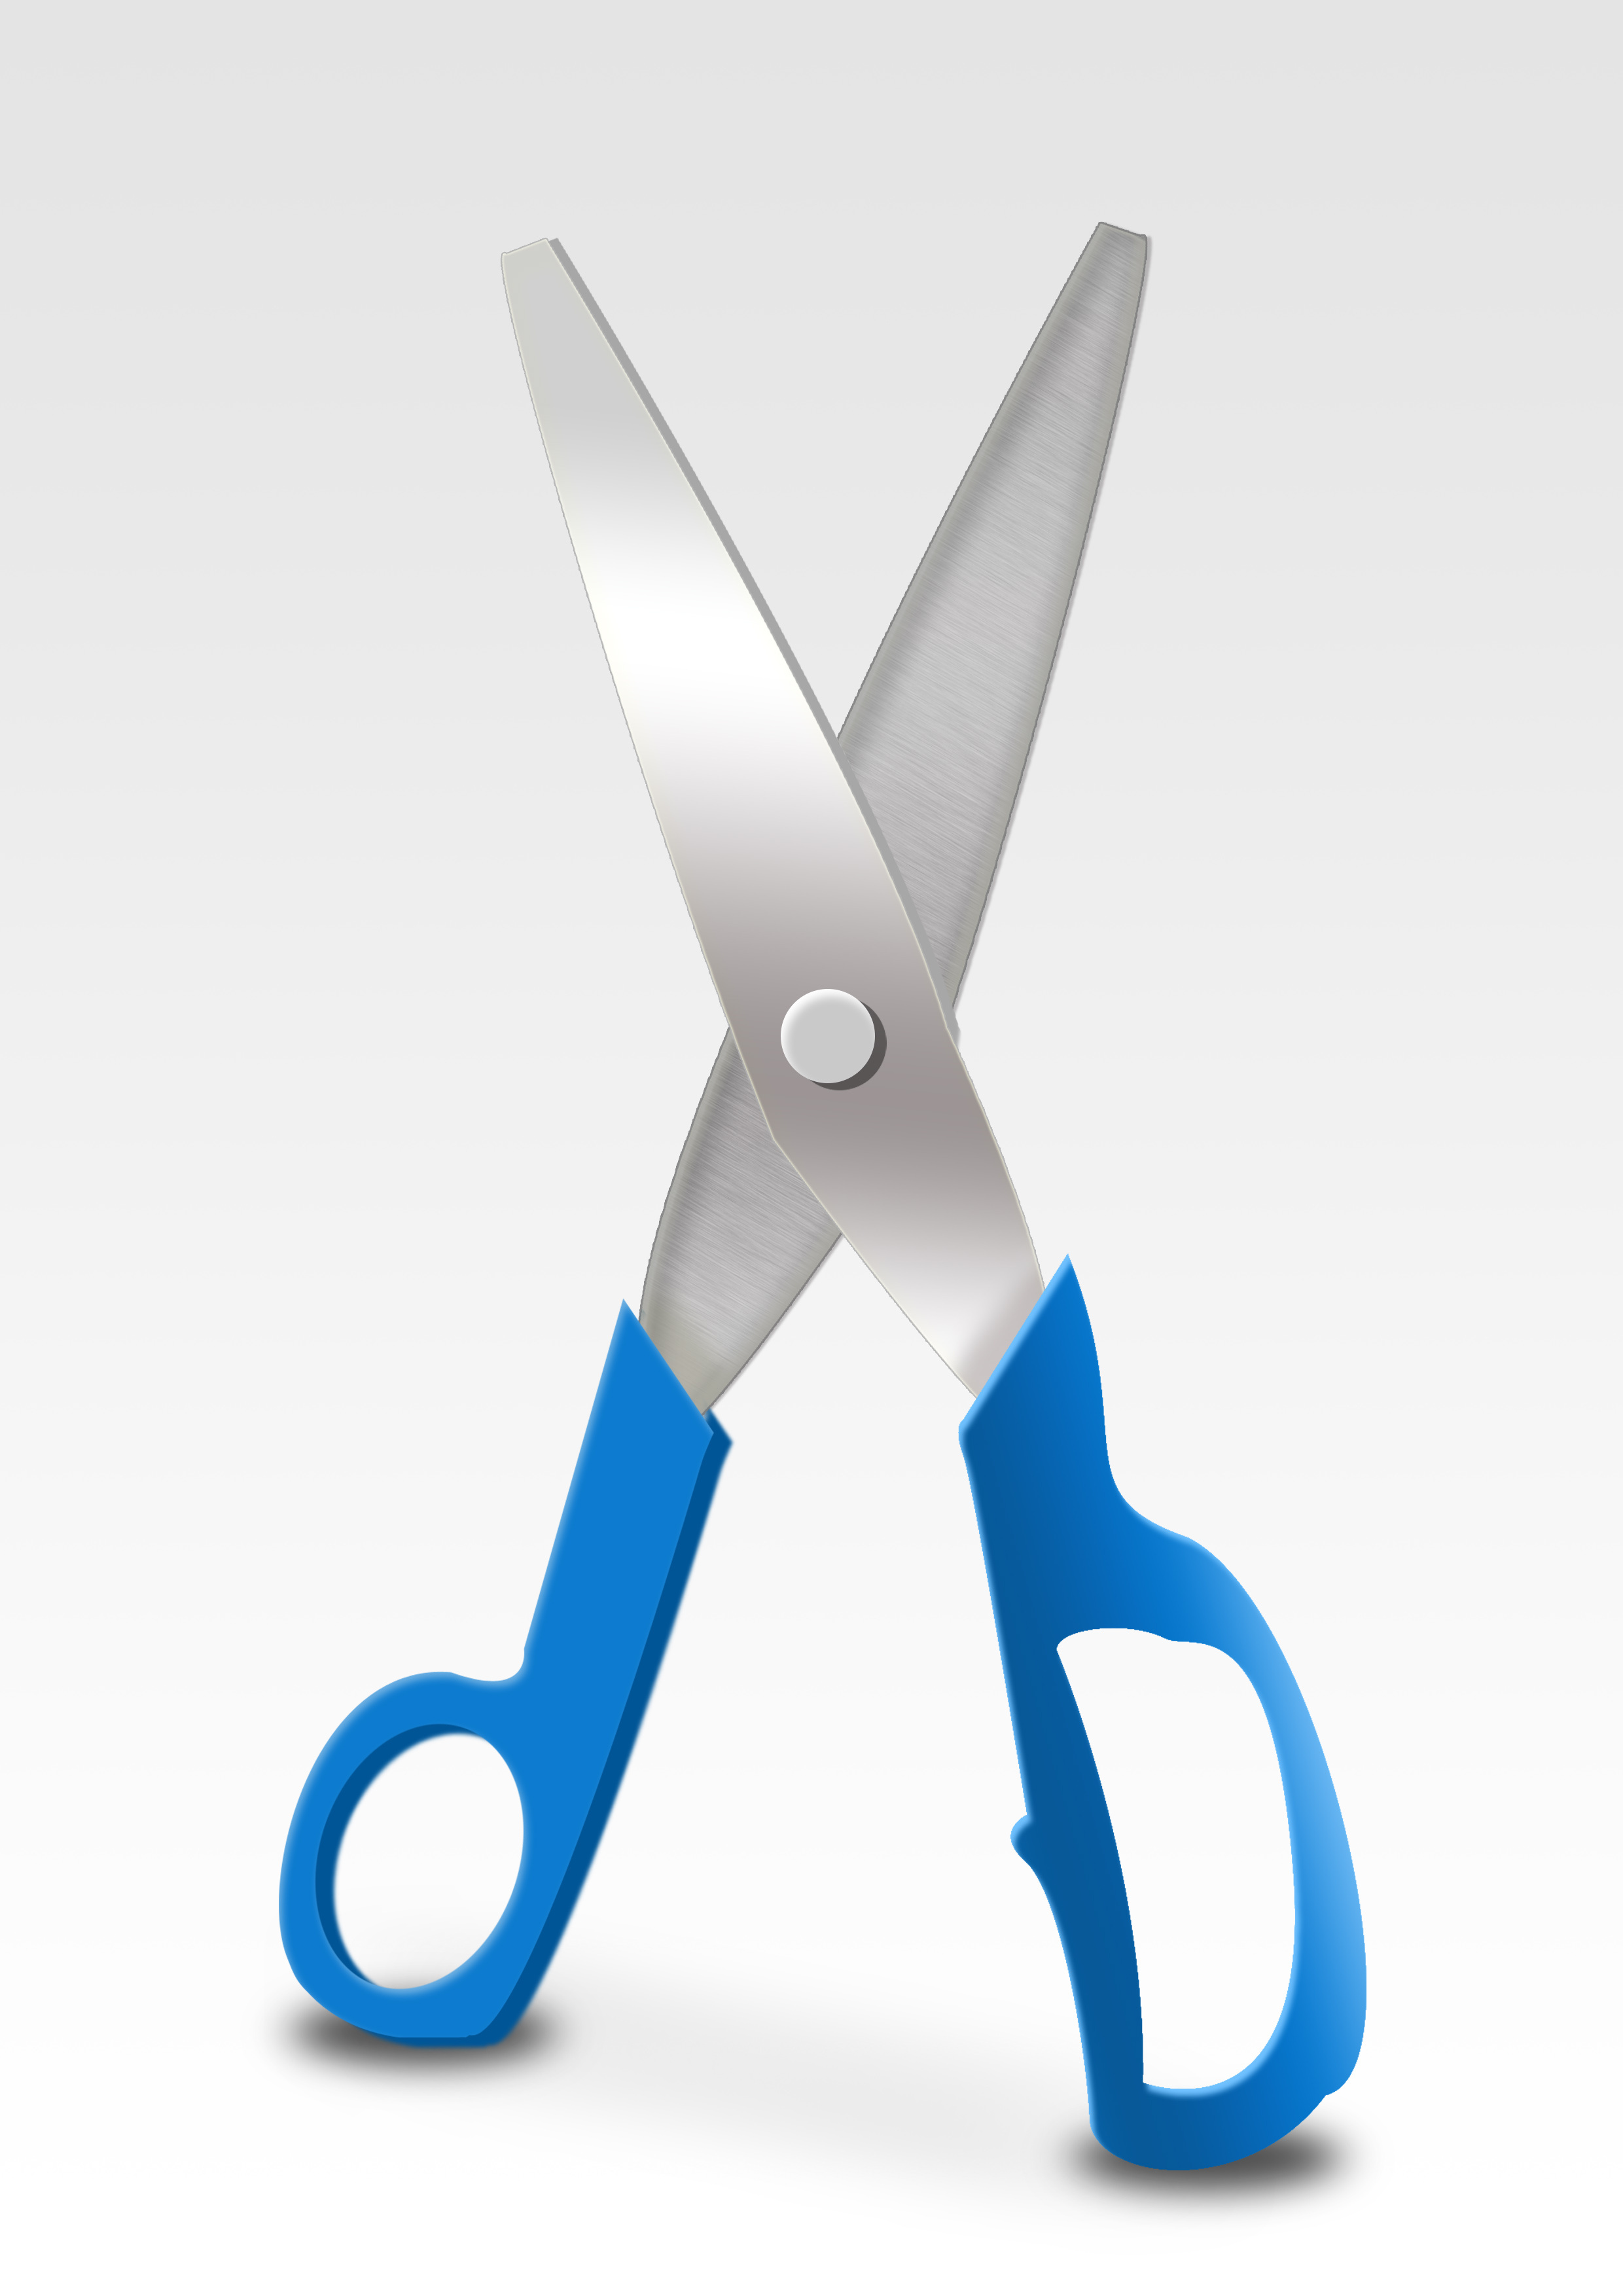 （所物®）双•剪 Double Scissors —— “再也不必左右为难”左右手通用性剪刀 ！！！ - 普象网